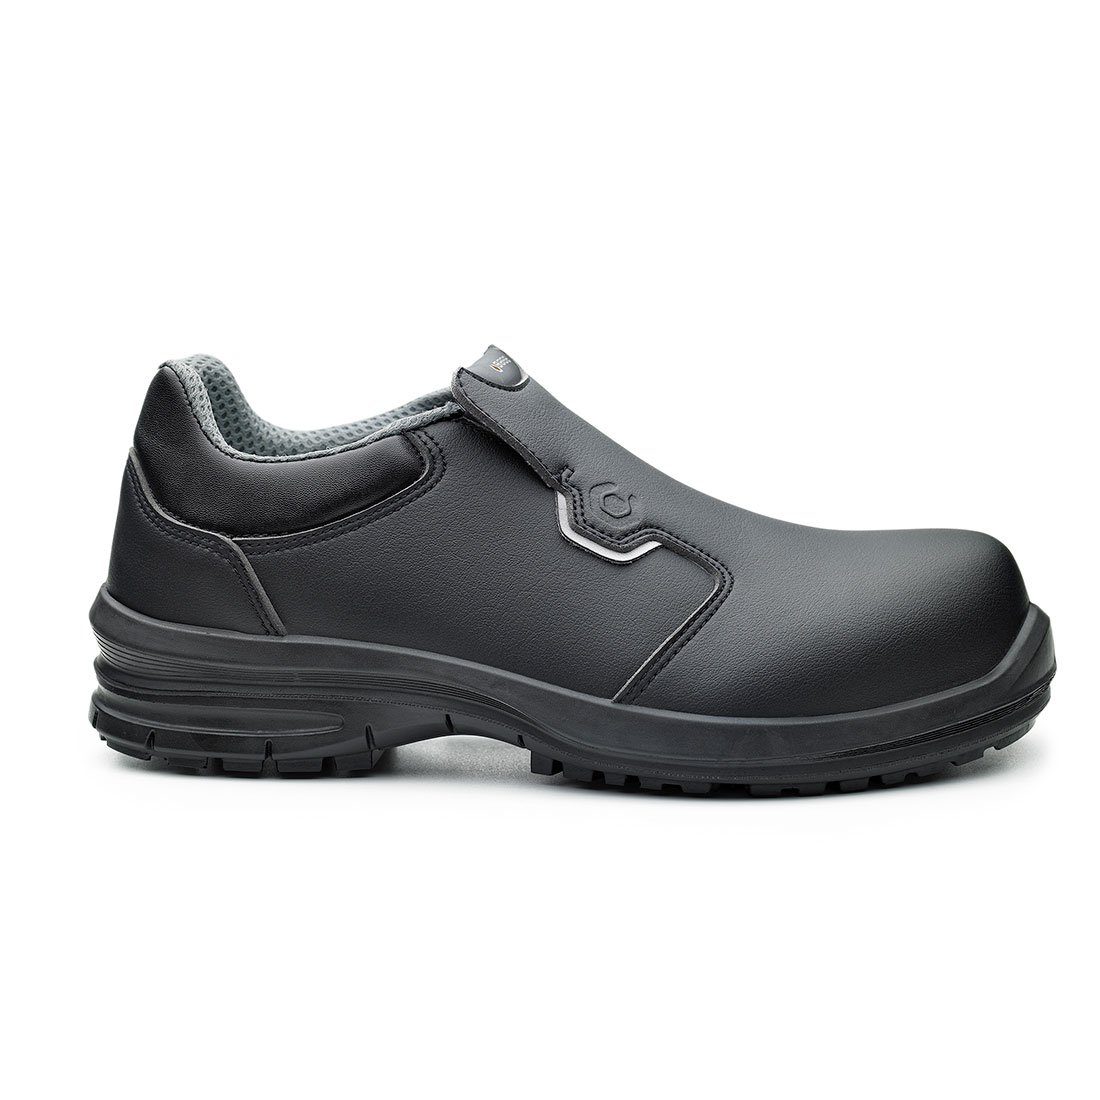 Base Footwear Sicherheitsschuhe B0962 - Kuma S2 SRC mit Schutzkappe Küchenschuhe Arbeitsschuh 100 % metallfrei, Schutzkappe 200 Joule, wasserdicht, rutschfest, antistatisch schwarz